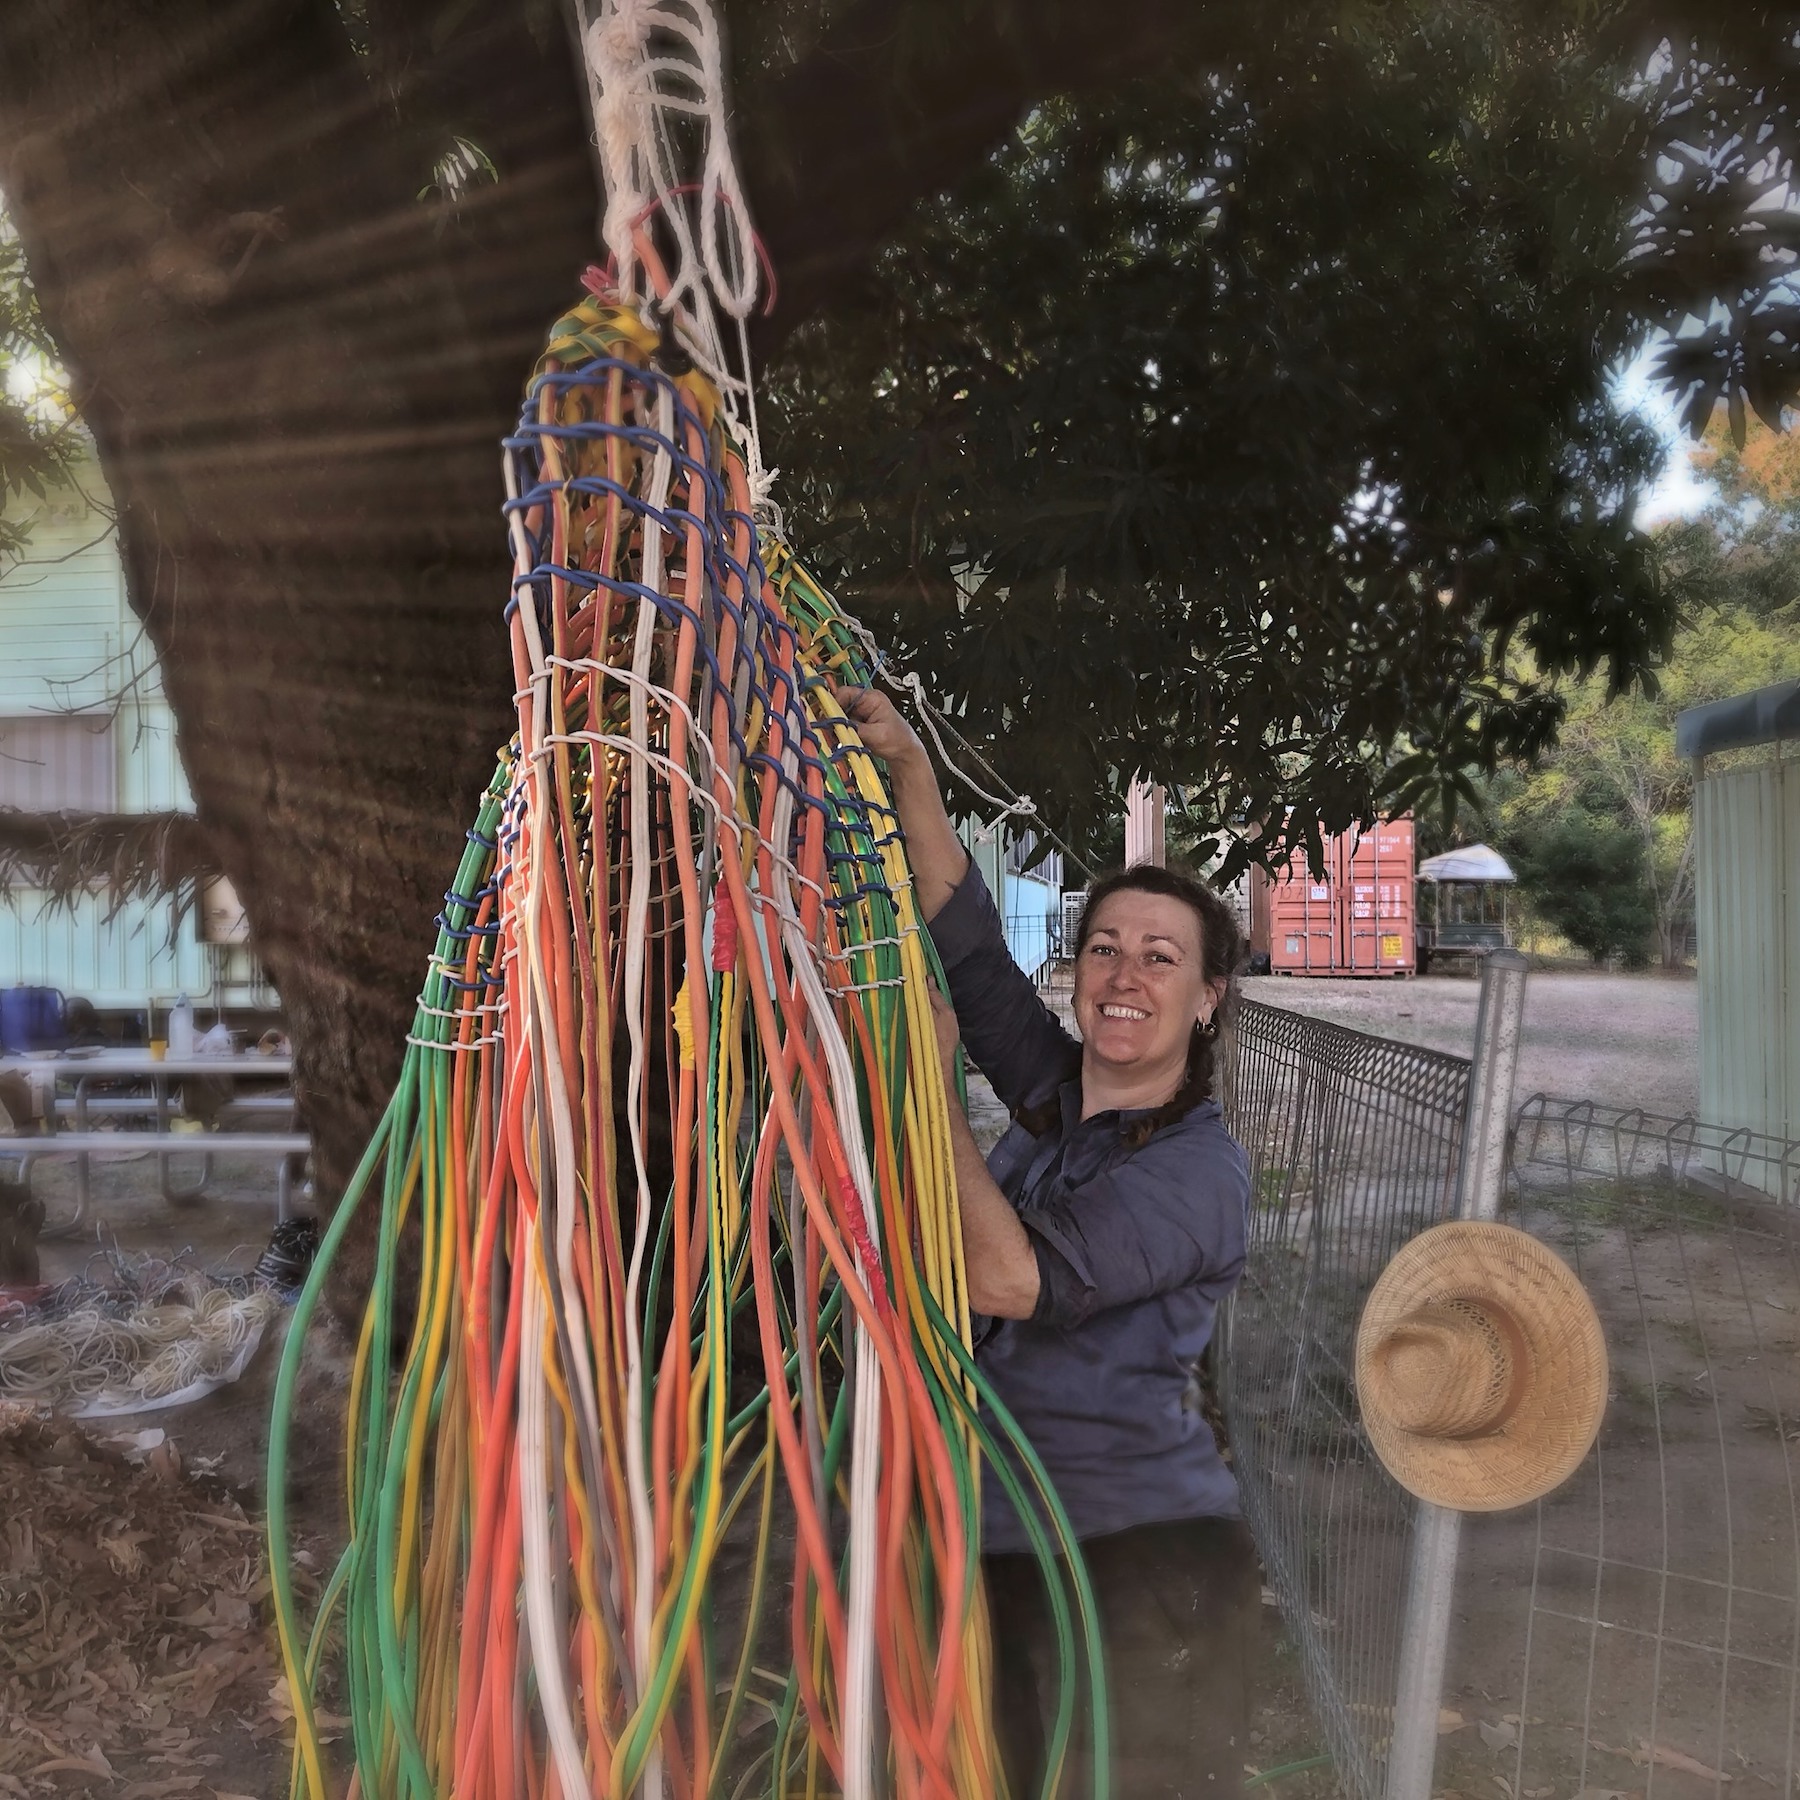 Bernadette works on weaving the big basket (Thawvl) under a mango tree in the community.